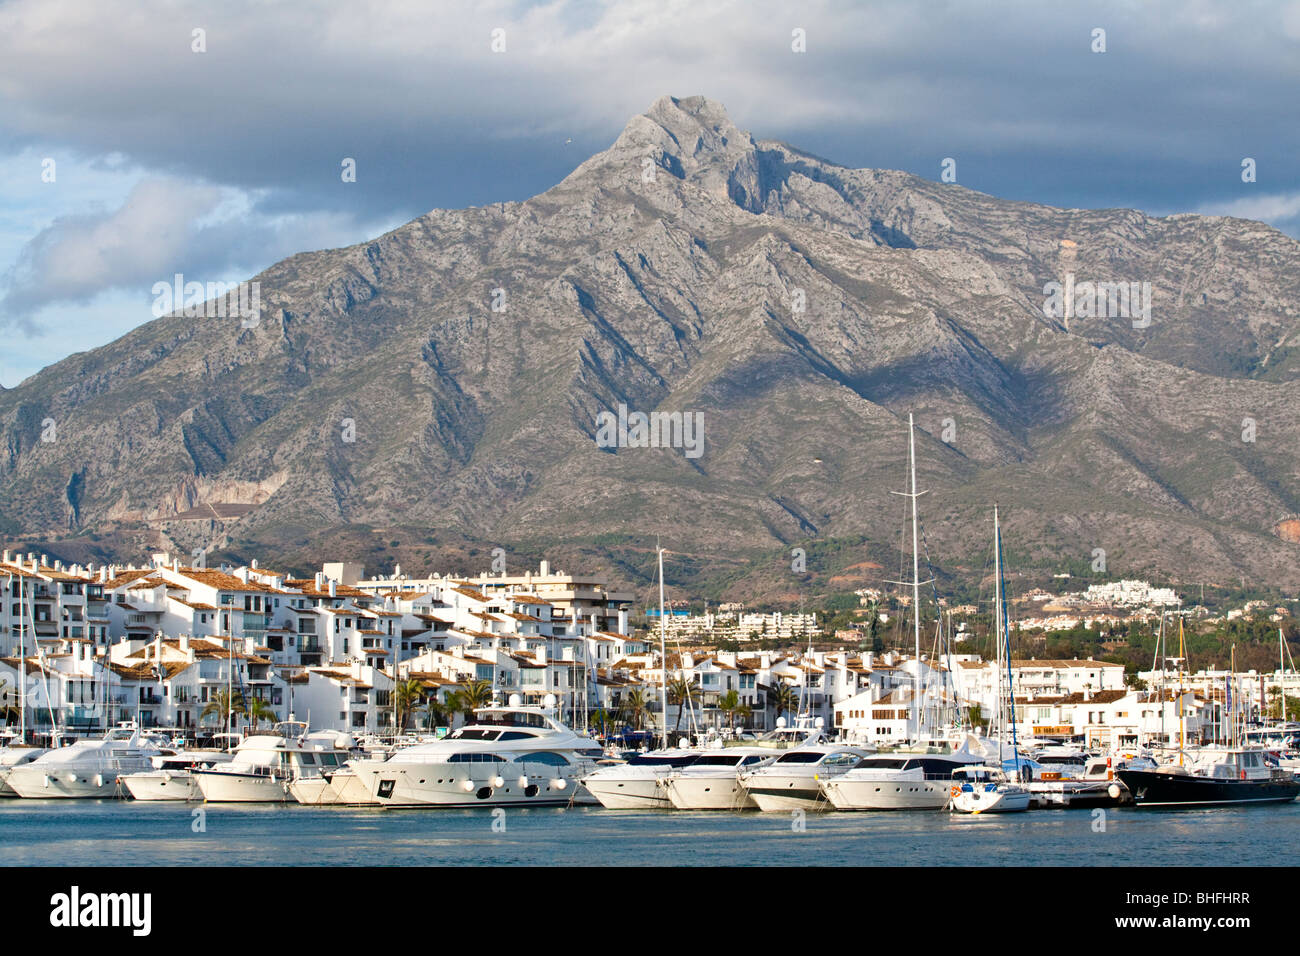 Mountain "La Conca" dietro al lussuoso porto turistico di Puerto Banus, Marbella - Andalusia, Spagna Foto Stock